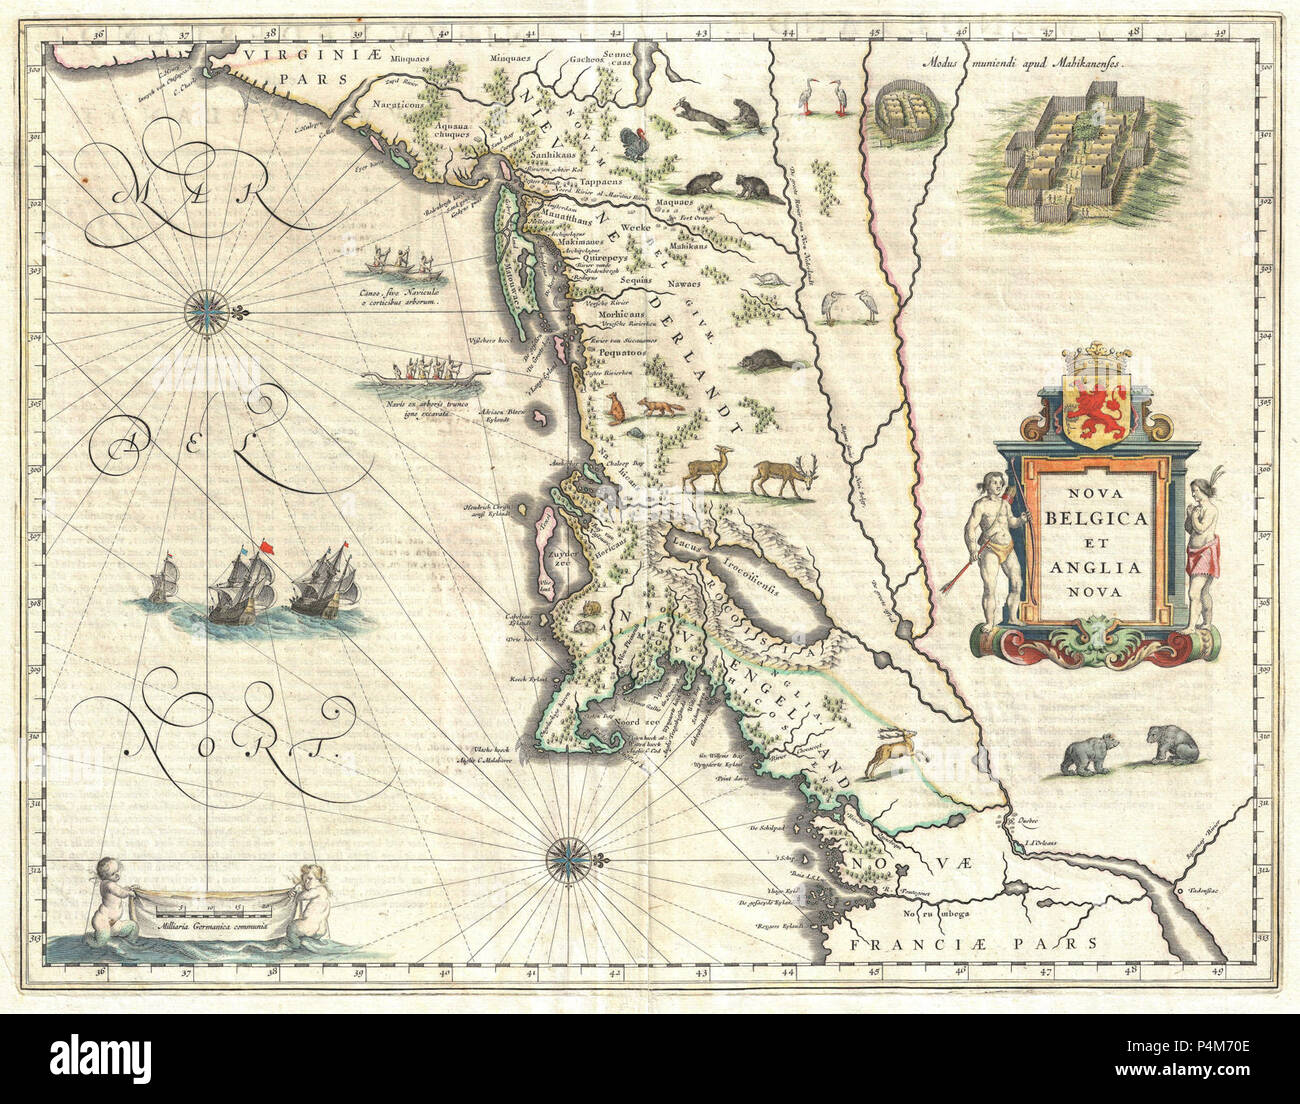 1635 Blaeu Mappa del New England e New York (prima rappresentazione di Manhattan come un'isola) - Geographicus - NovaBelgicaetAngliaNova-blaeu-1635. Foto Stock